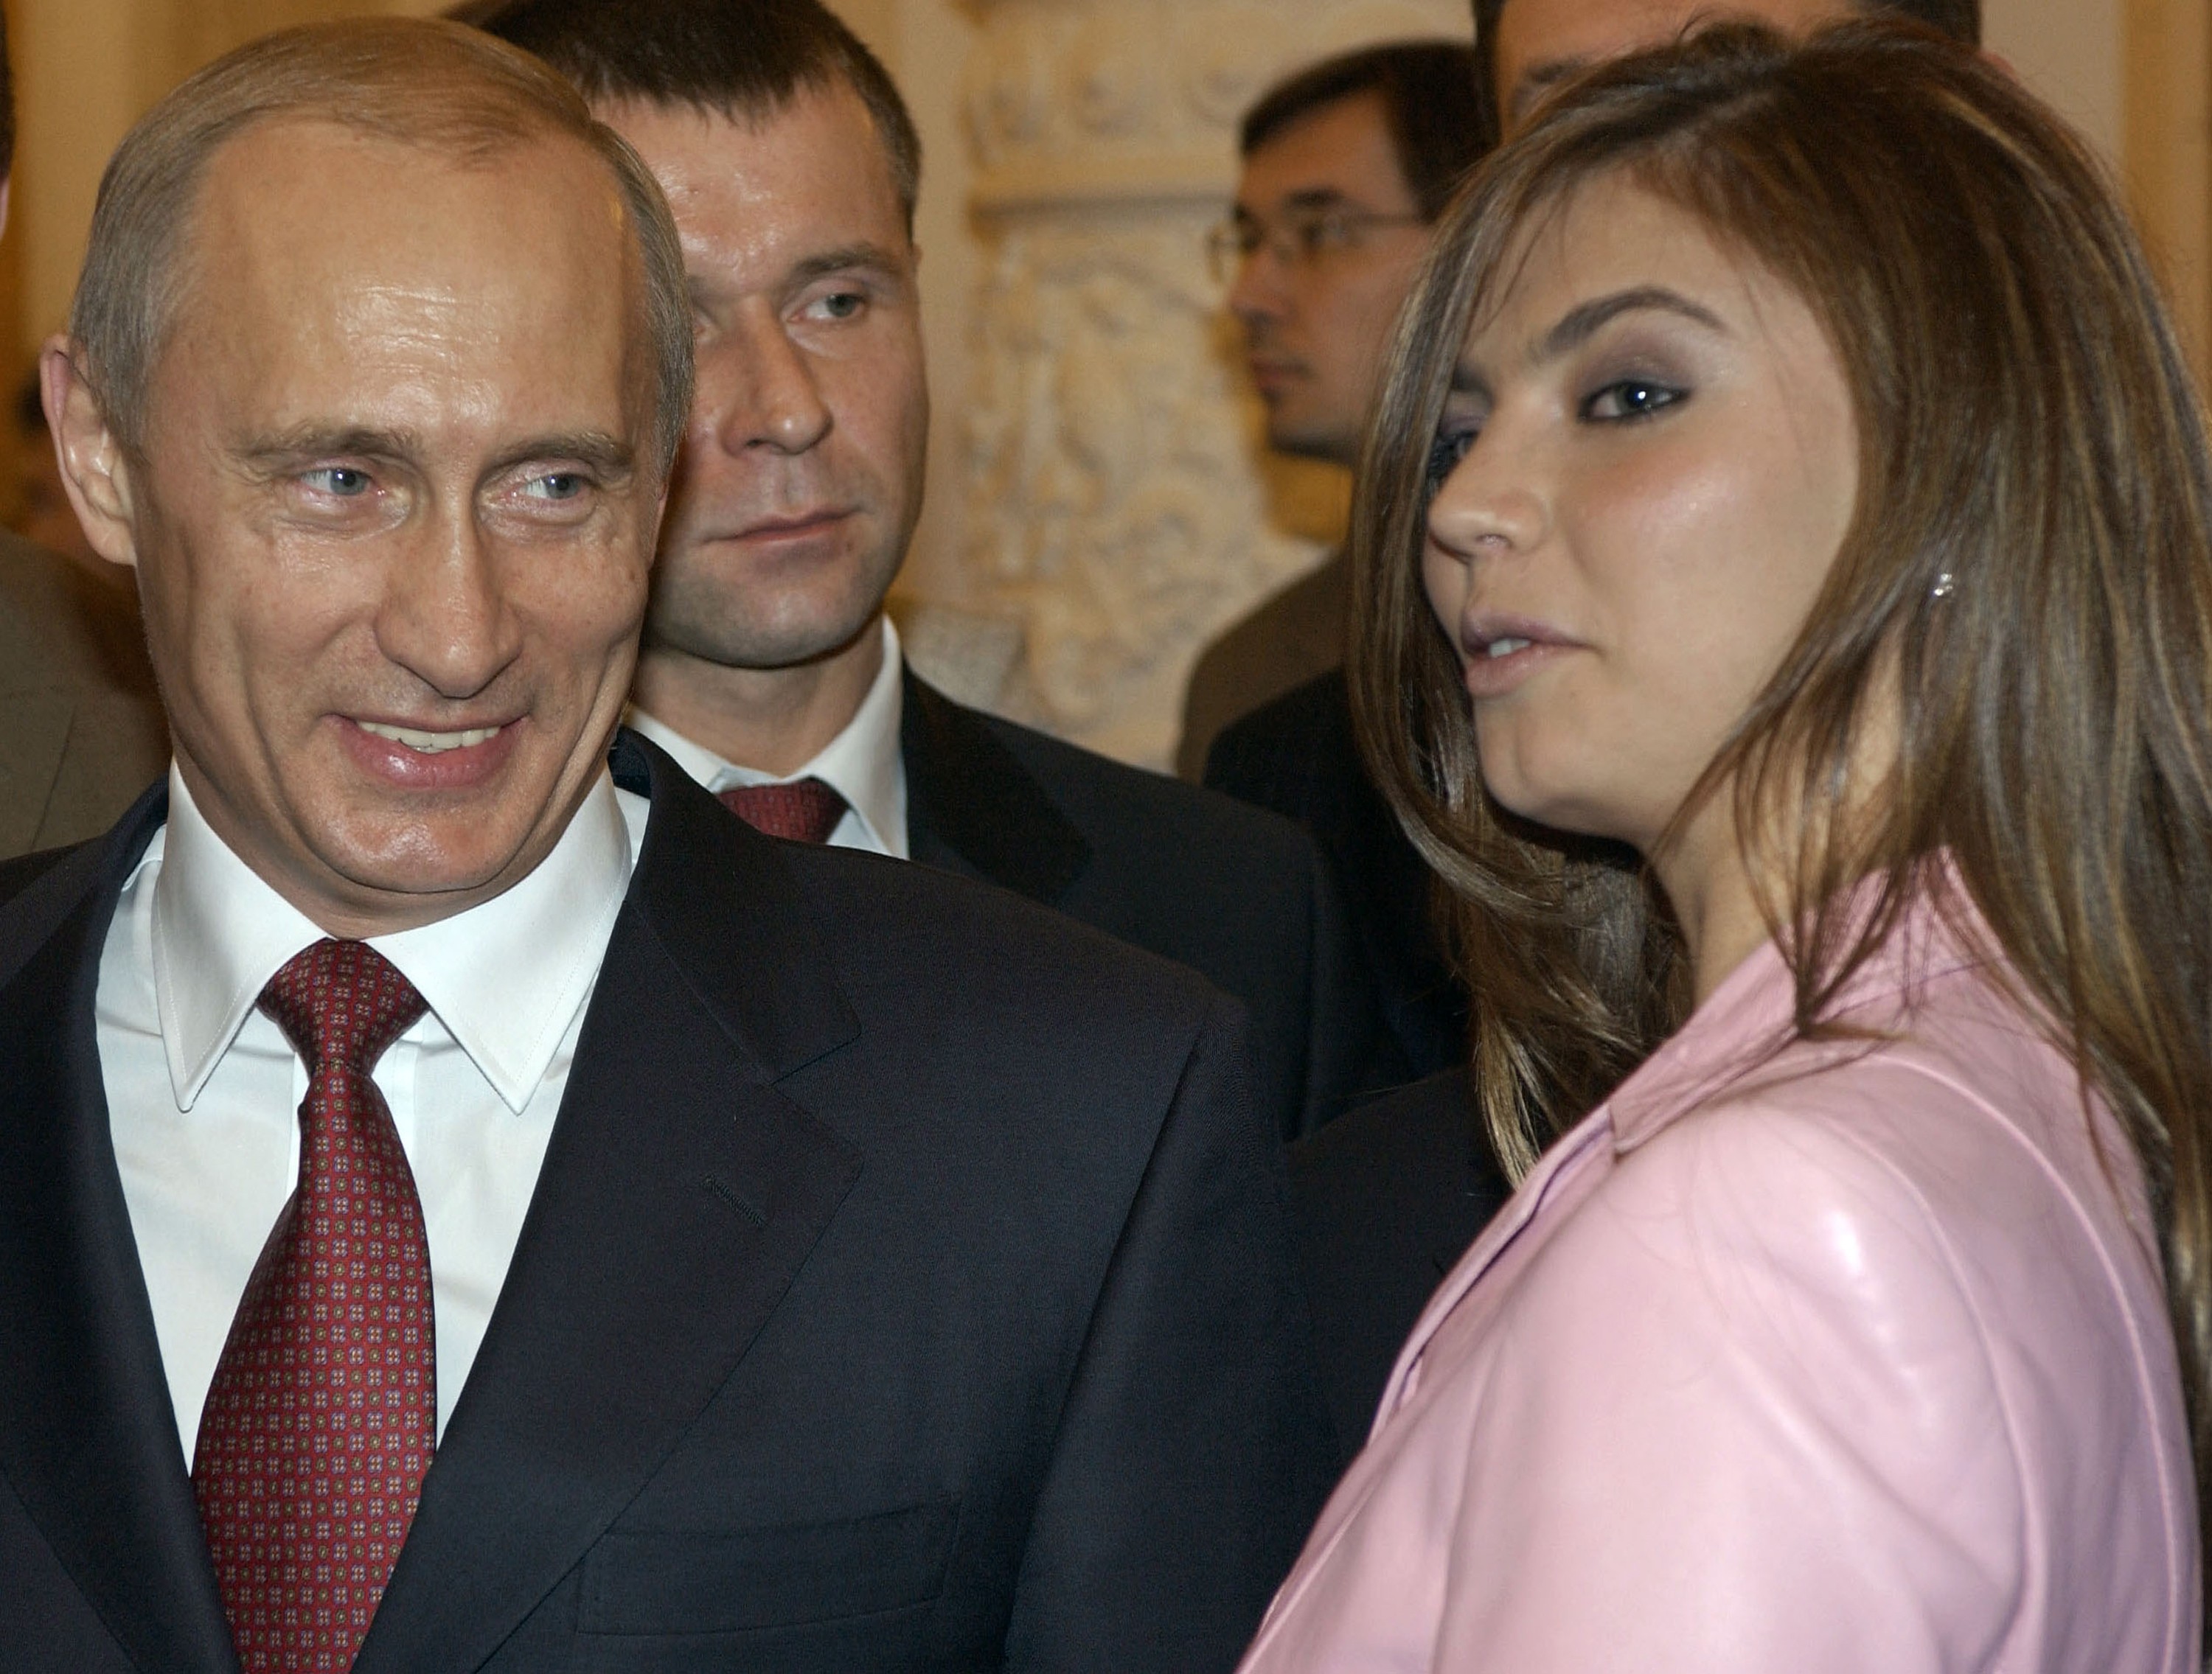 Vladimir Putin e Alina Kabaeva, apontada como affair do presidente (Foto: Getty)